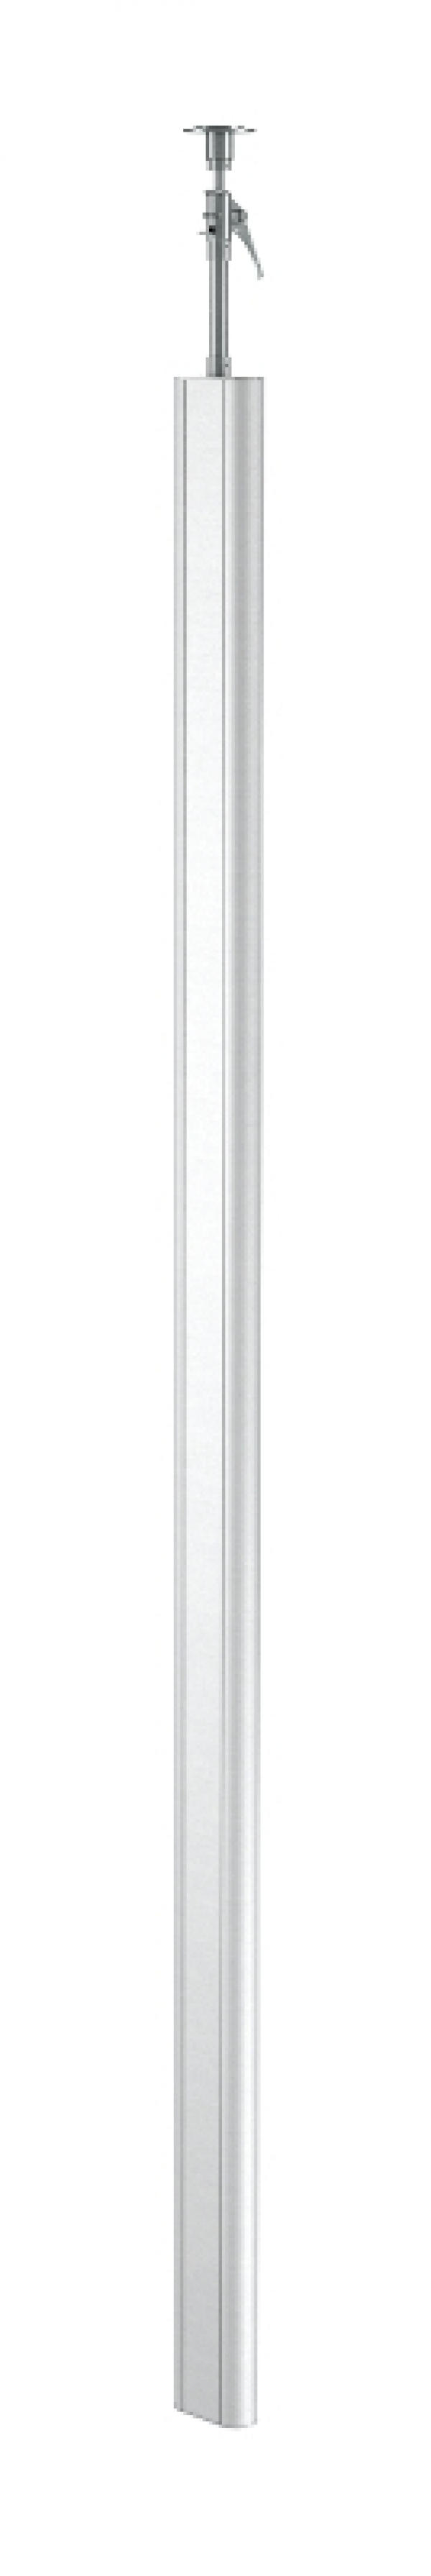 6289088 - OBO BETTERMANN Электромонтажная колонна 3,3-3,5 м 1-сторонняя 70x140x3313 мм (алюминий) (ISSOG70140EL).